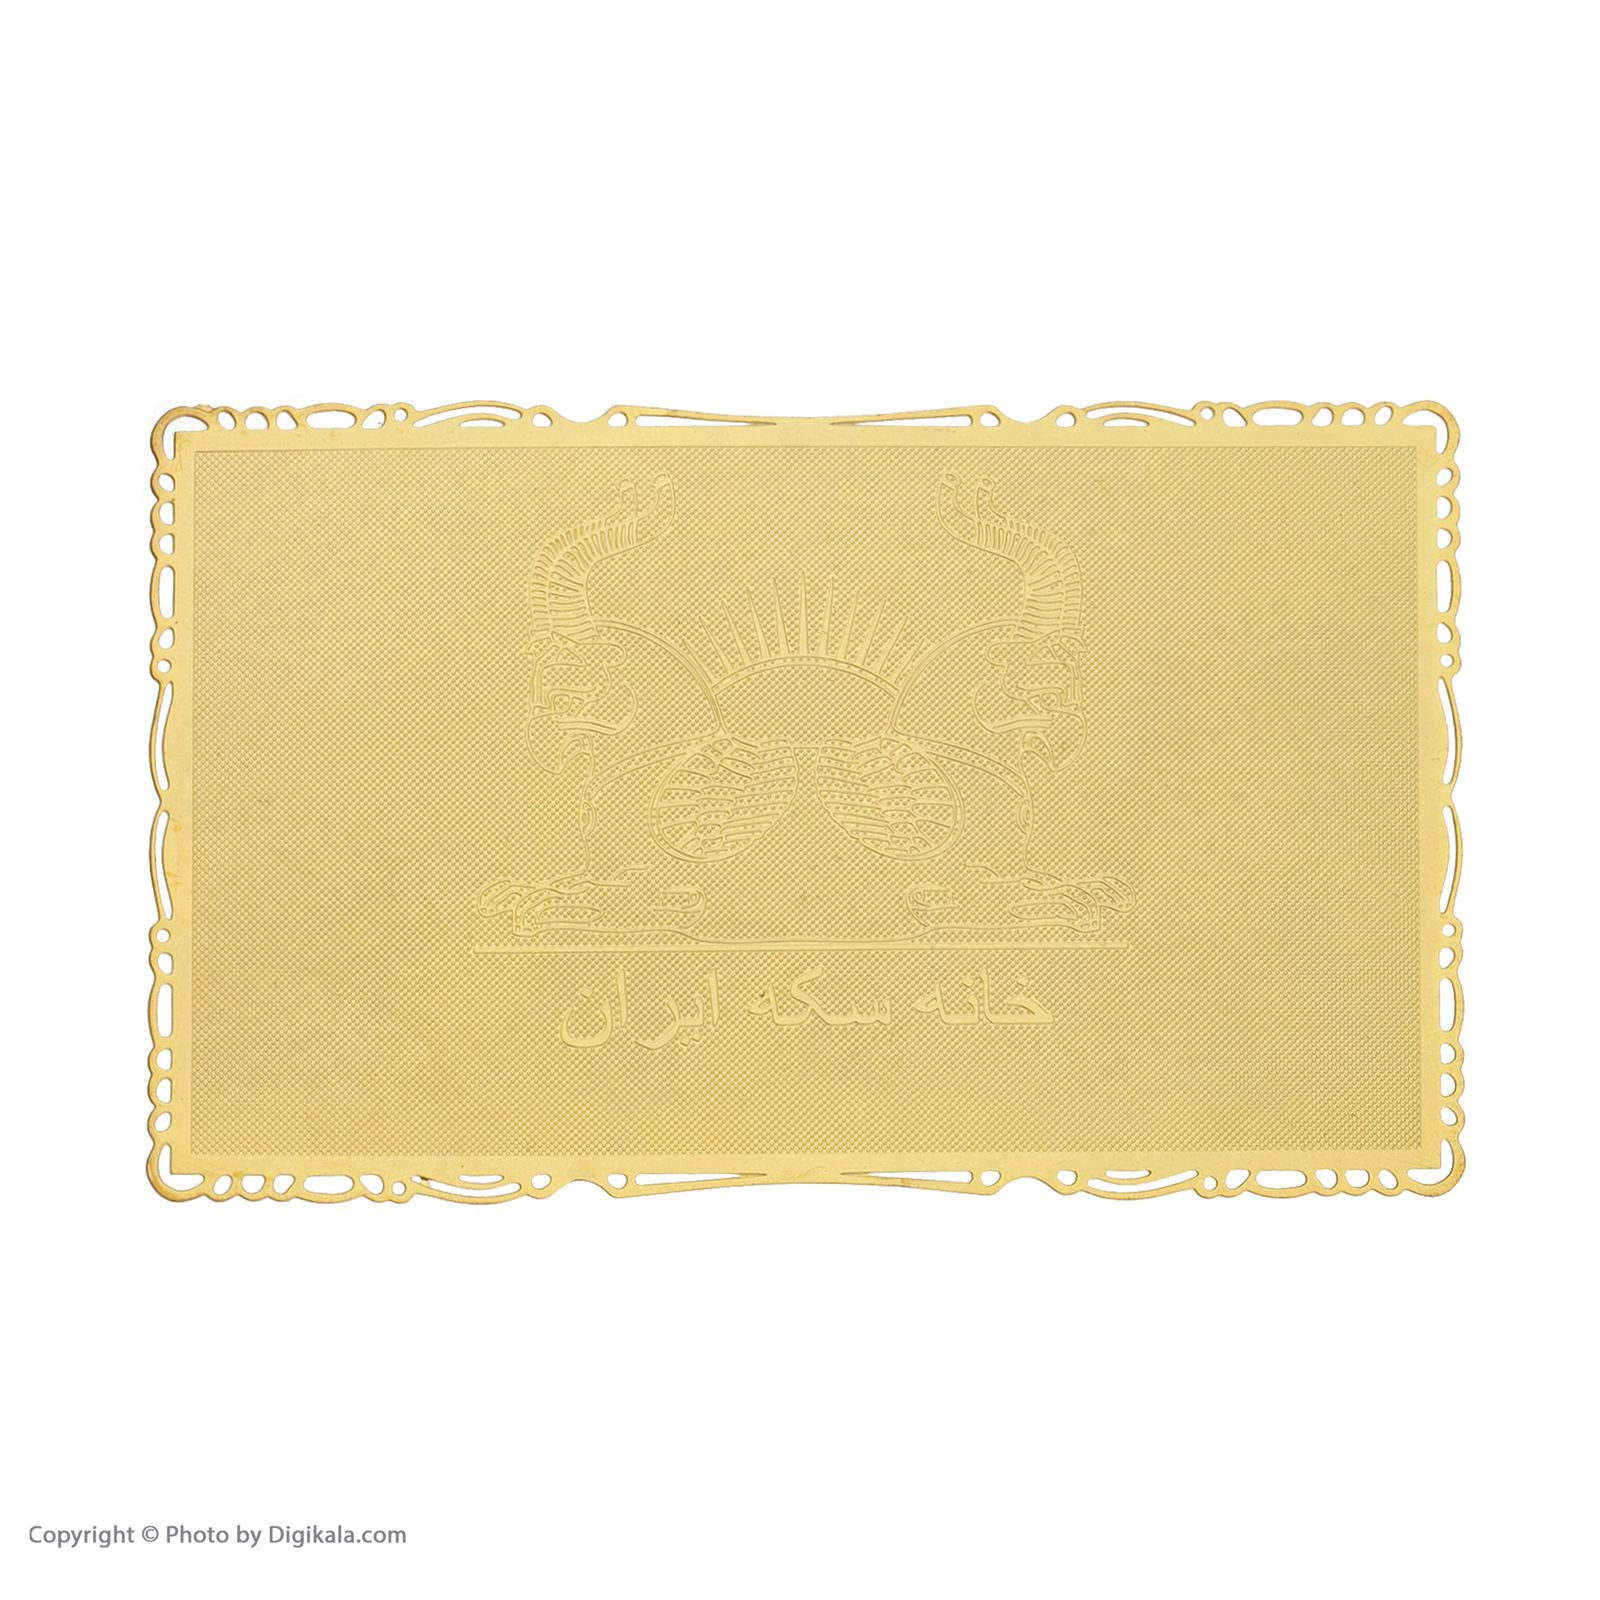 طلا گرمی 24 عیار خانه سکه ایران کد 007 -  - 3